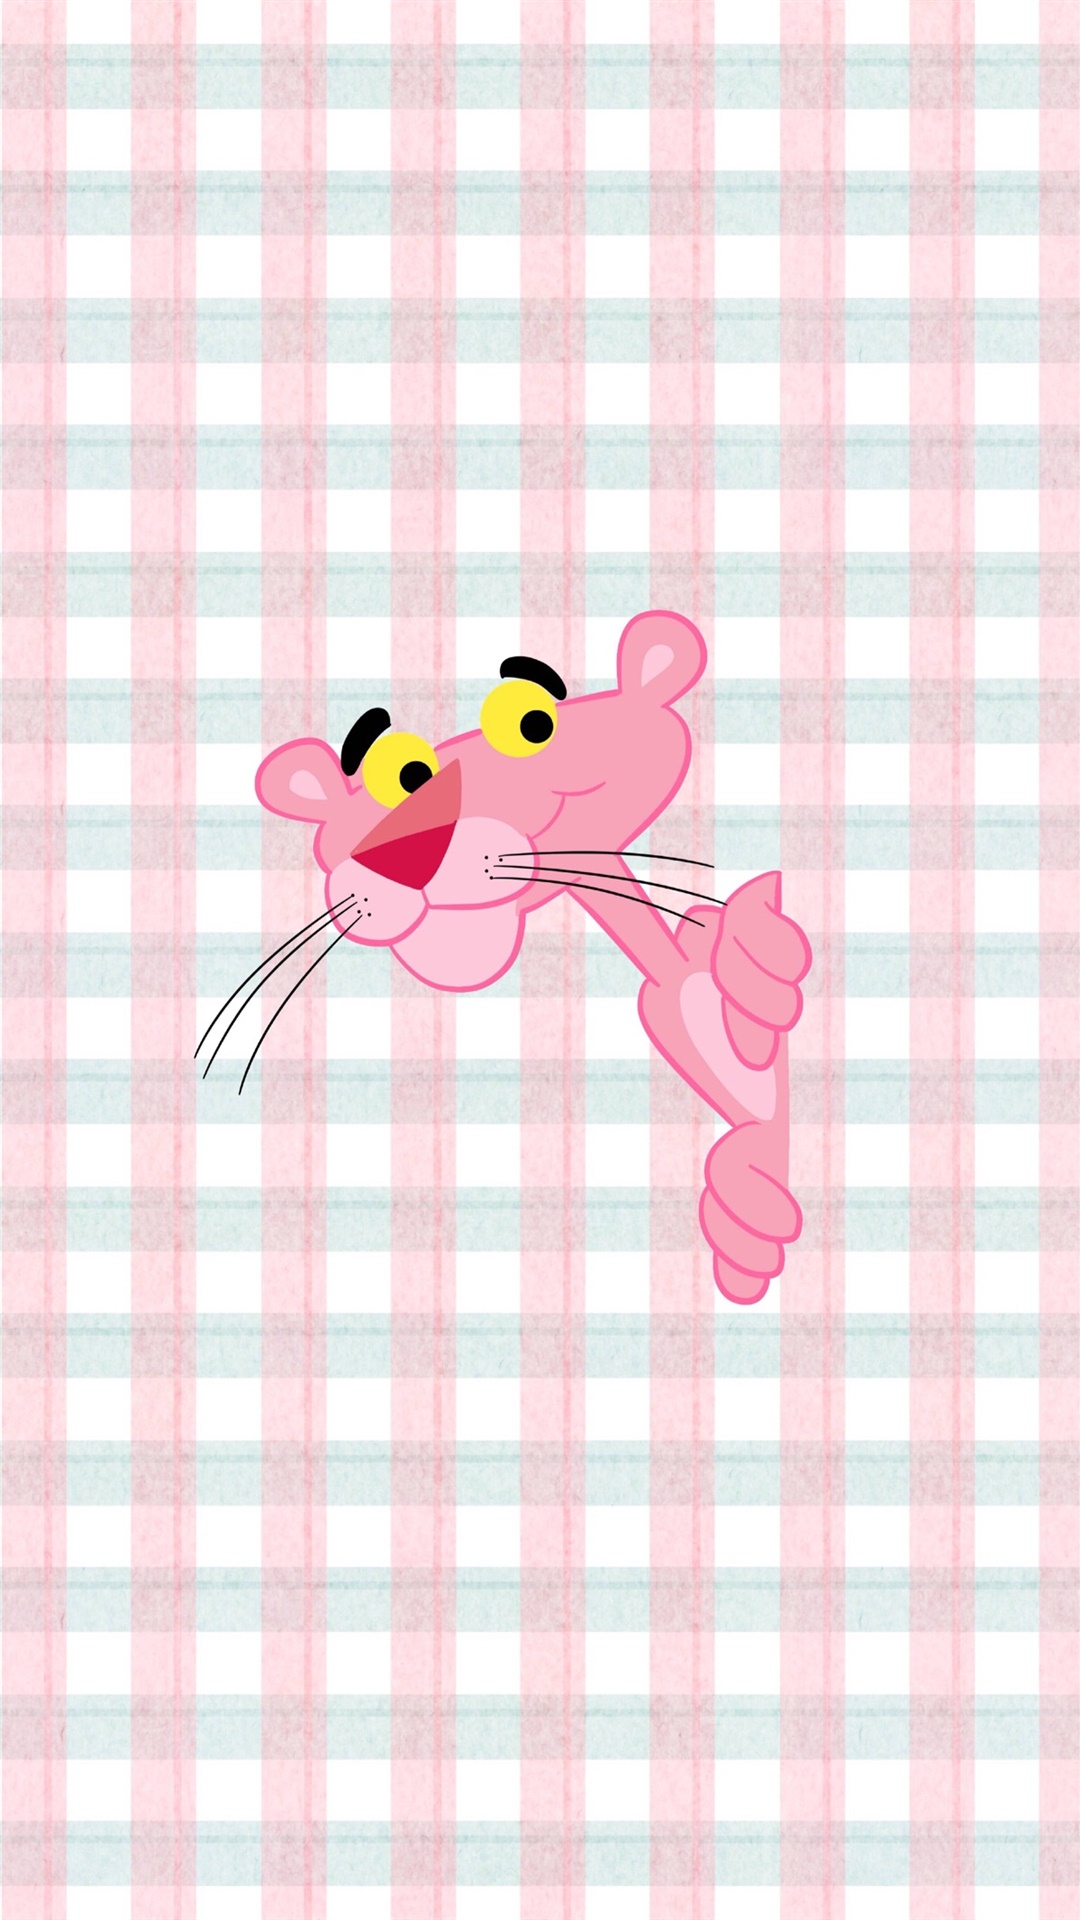 粉红豹可爱手机壁纸 粉红豹图片壁纸(3)